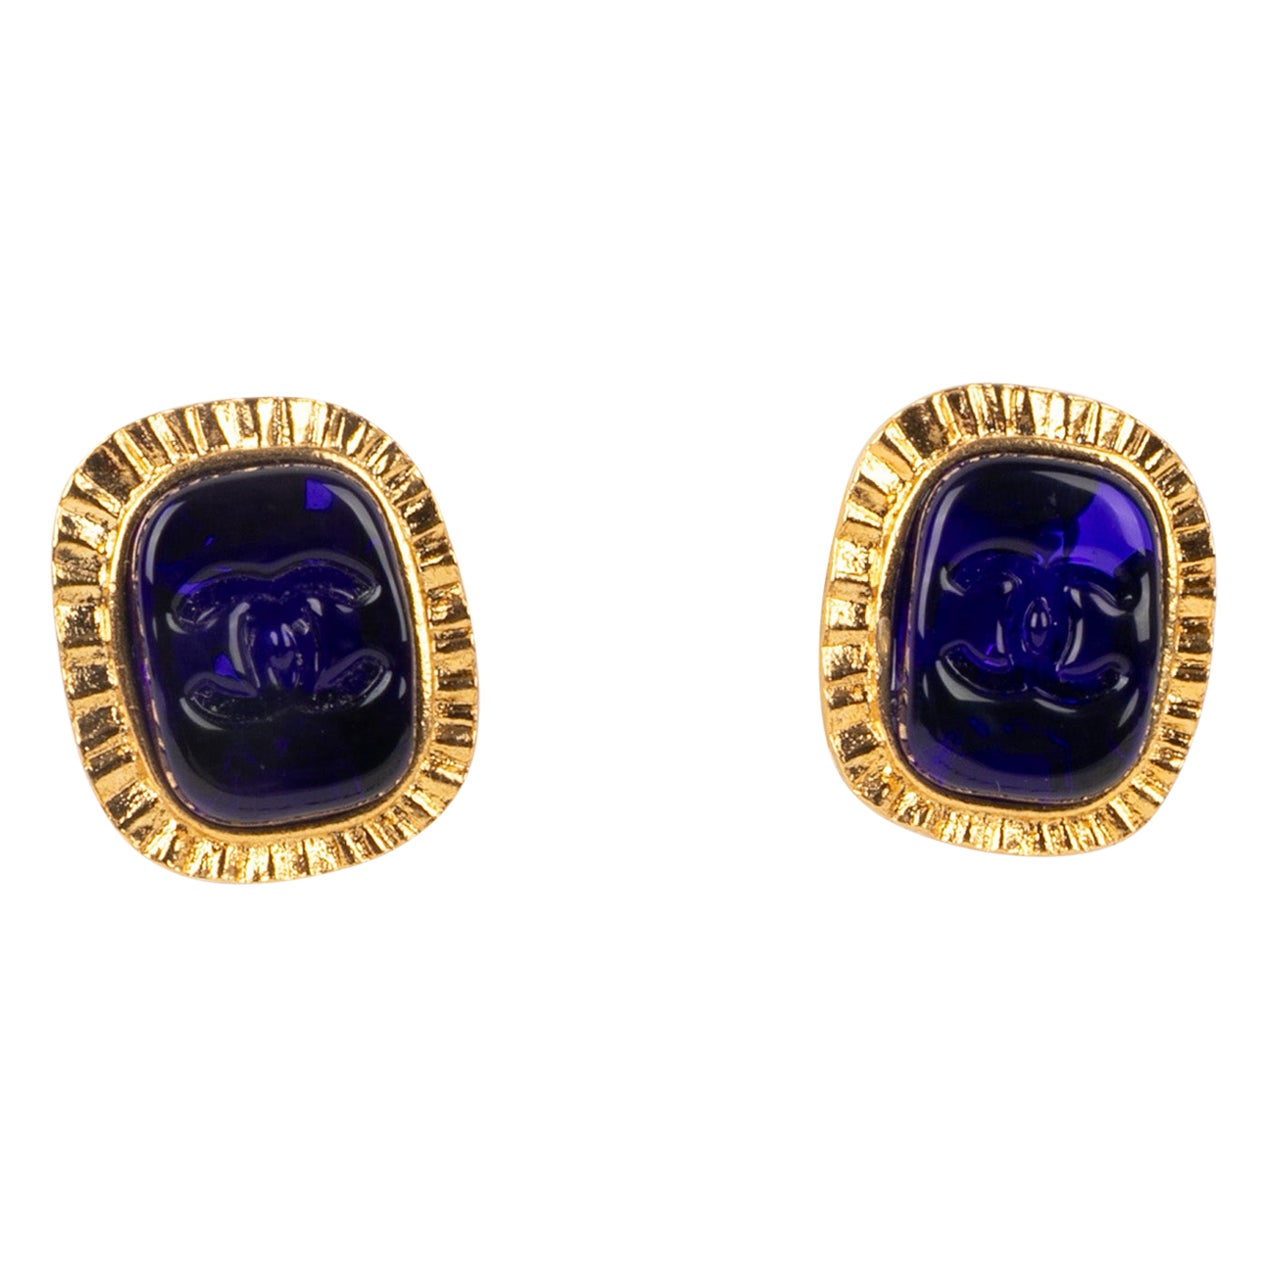 Chanel earrings 1995